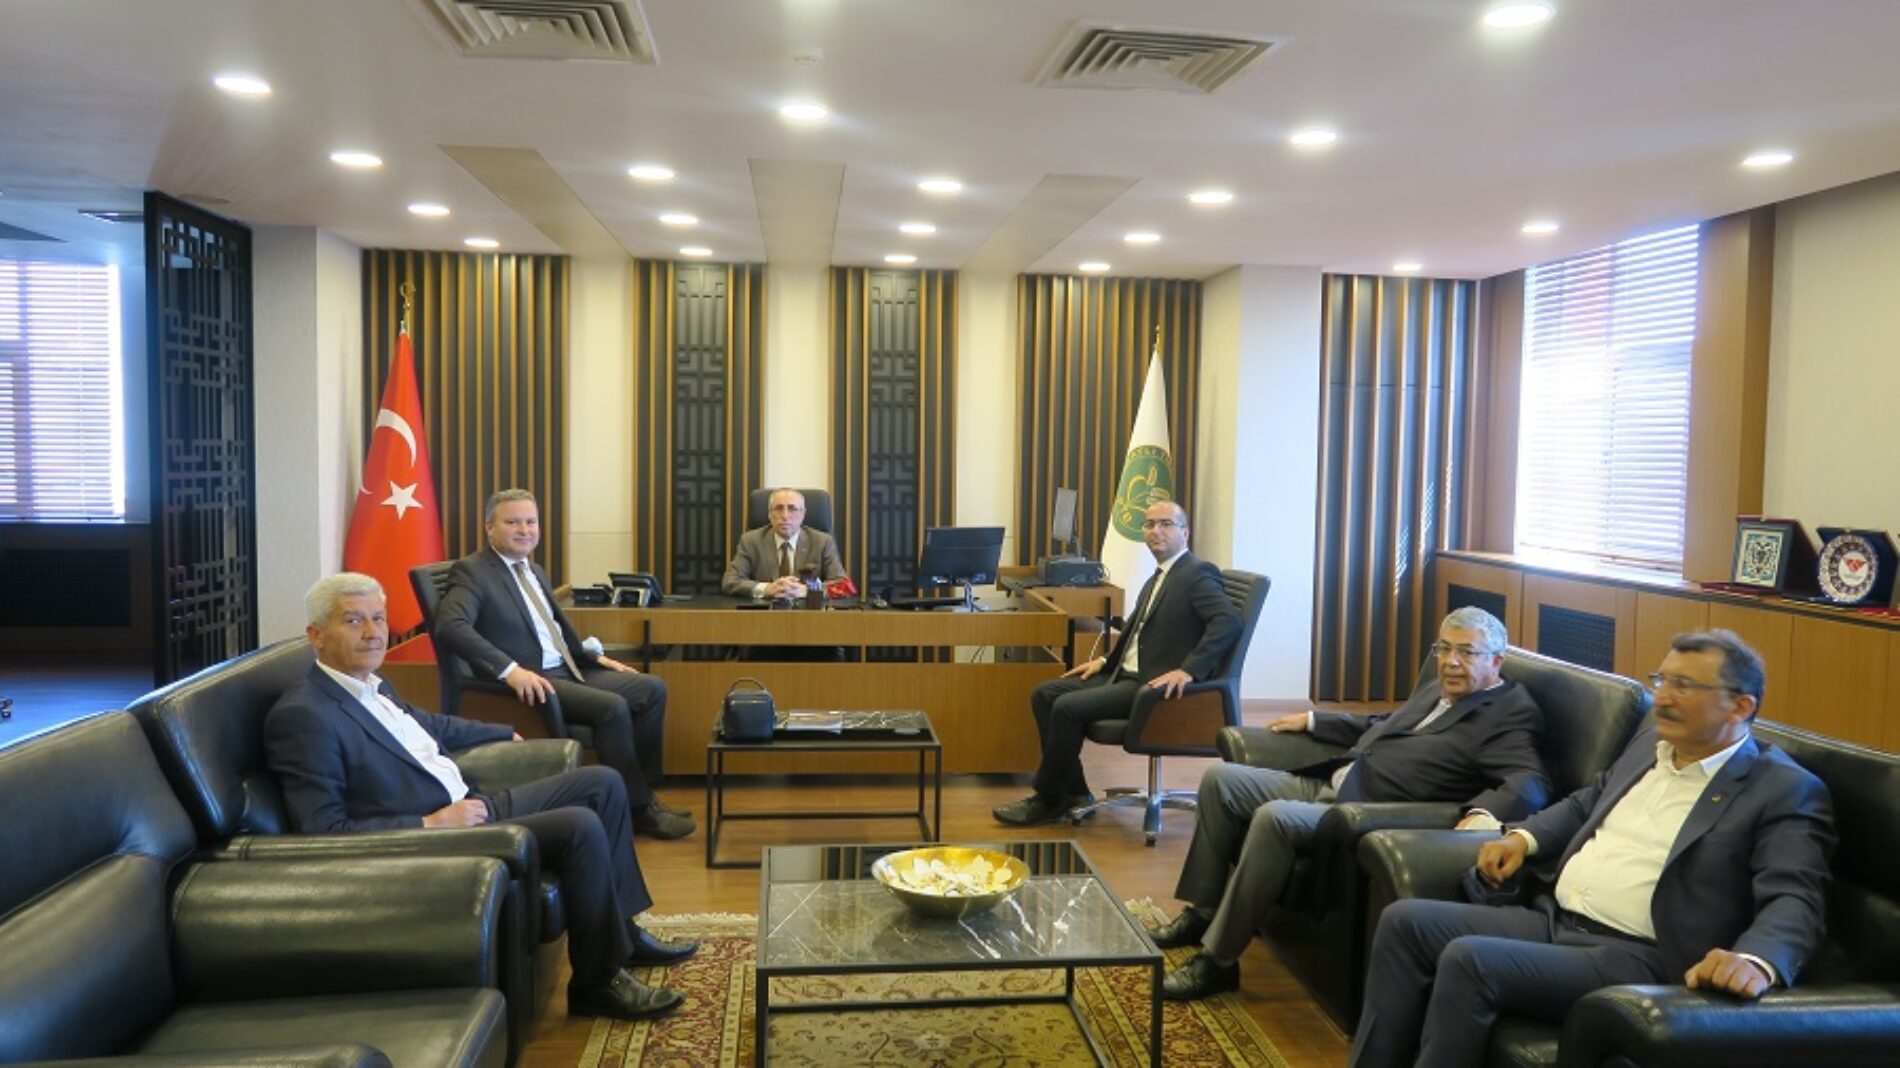 Ziraat Bankası Duatepe-Polatlı Şube Yöneticisi Sn Ünsal CANTÜRK Başkanımız Sn Yahya TOPLU’yu makamında ziyaret etti.